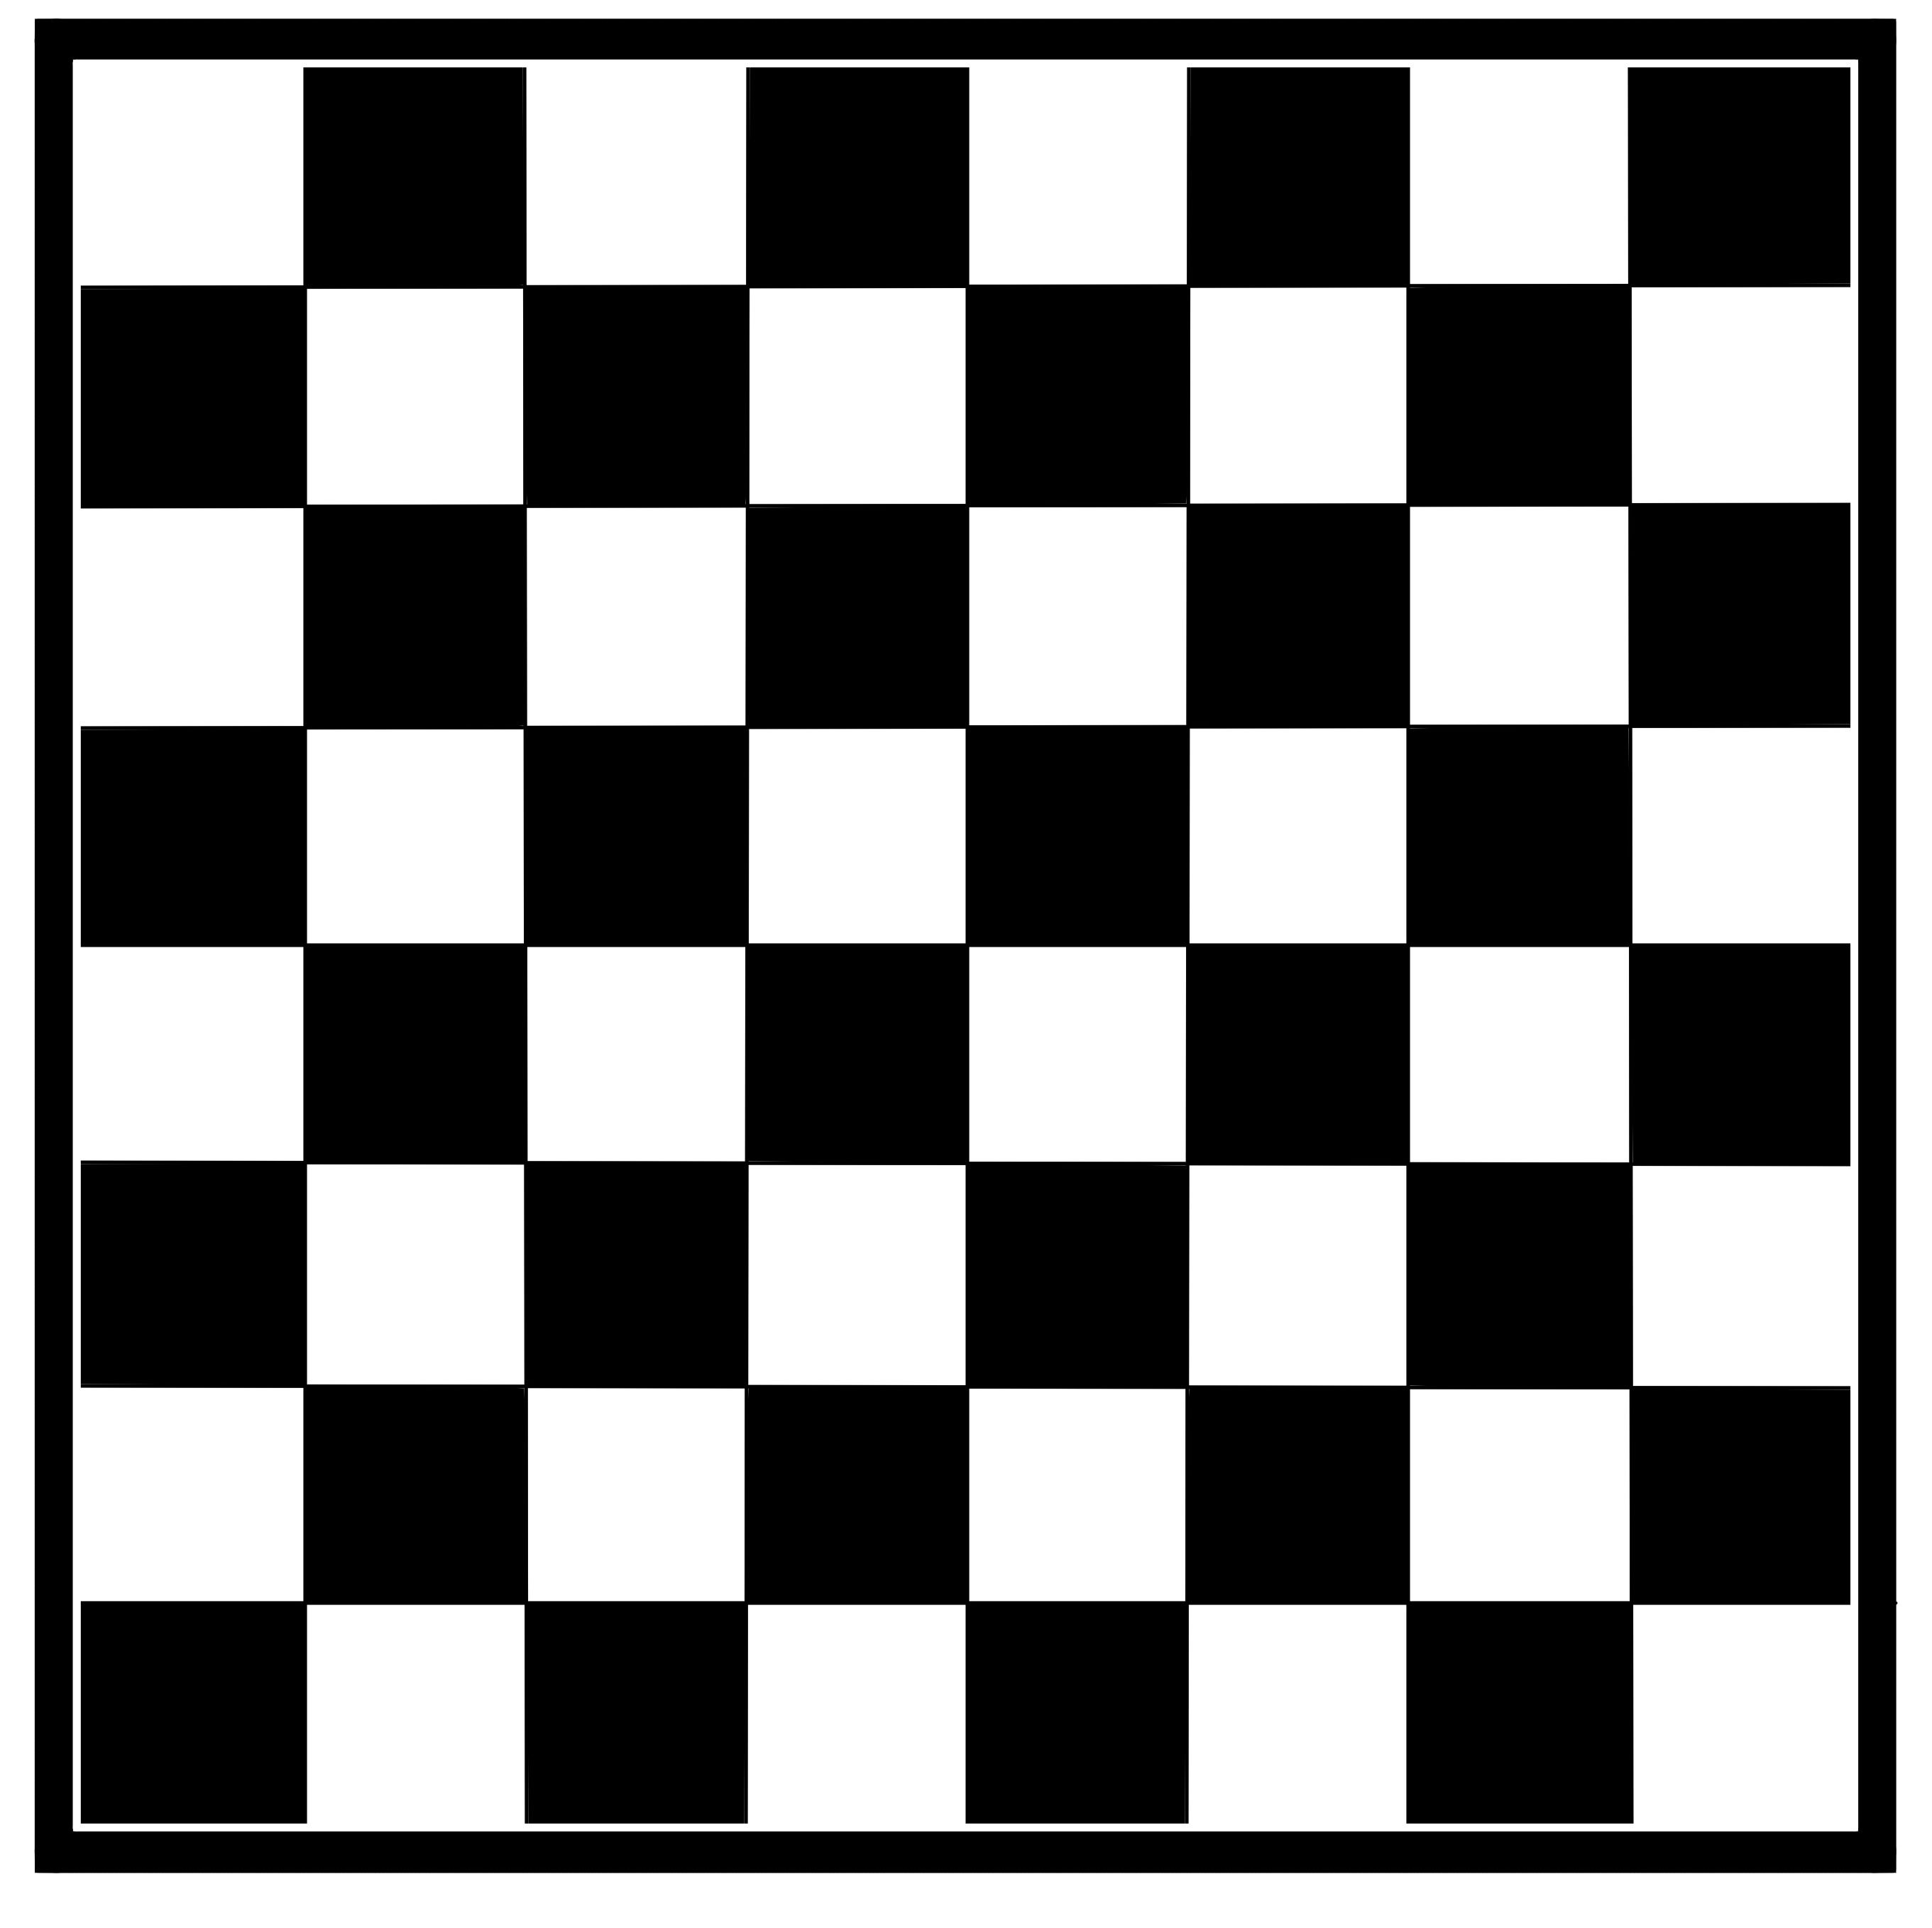 国际象棋棋盘的平面图图片